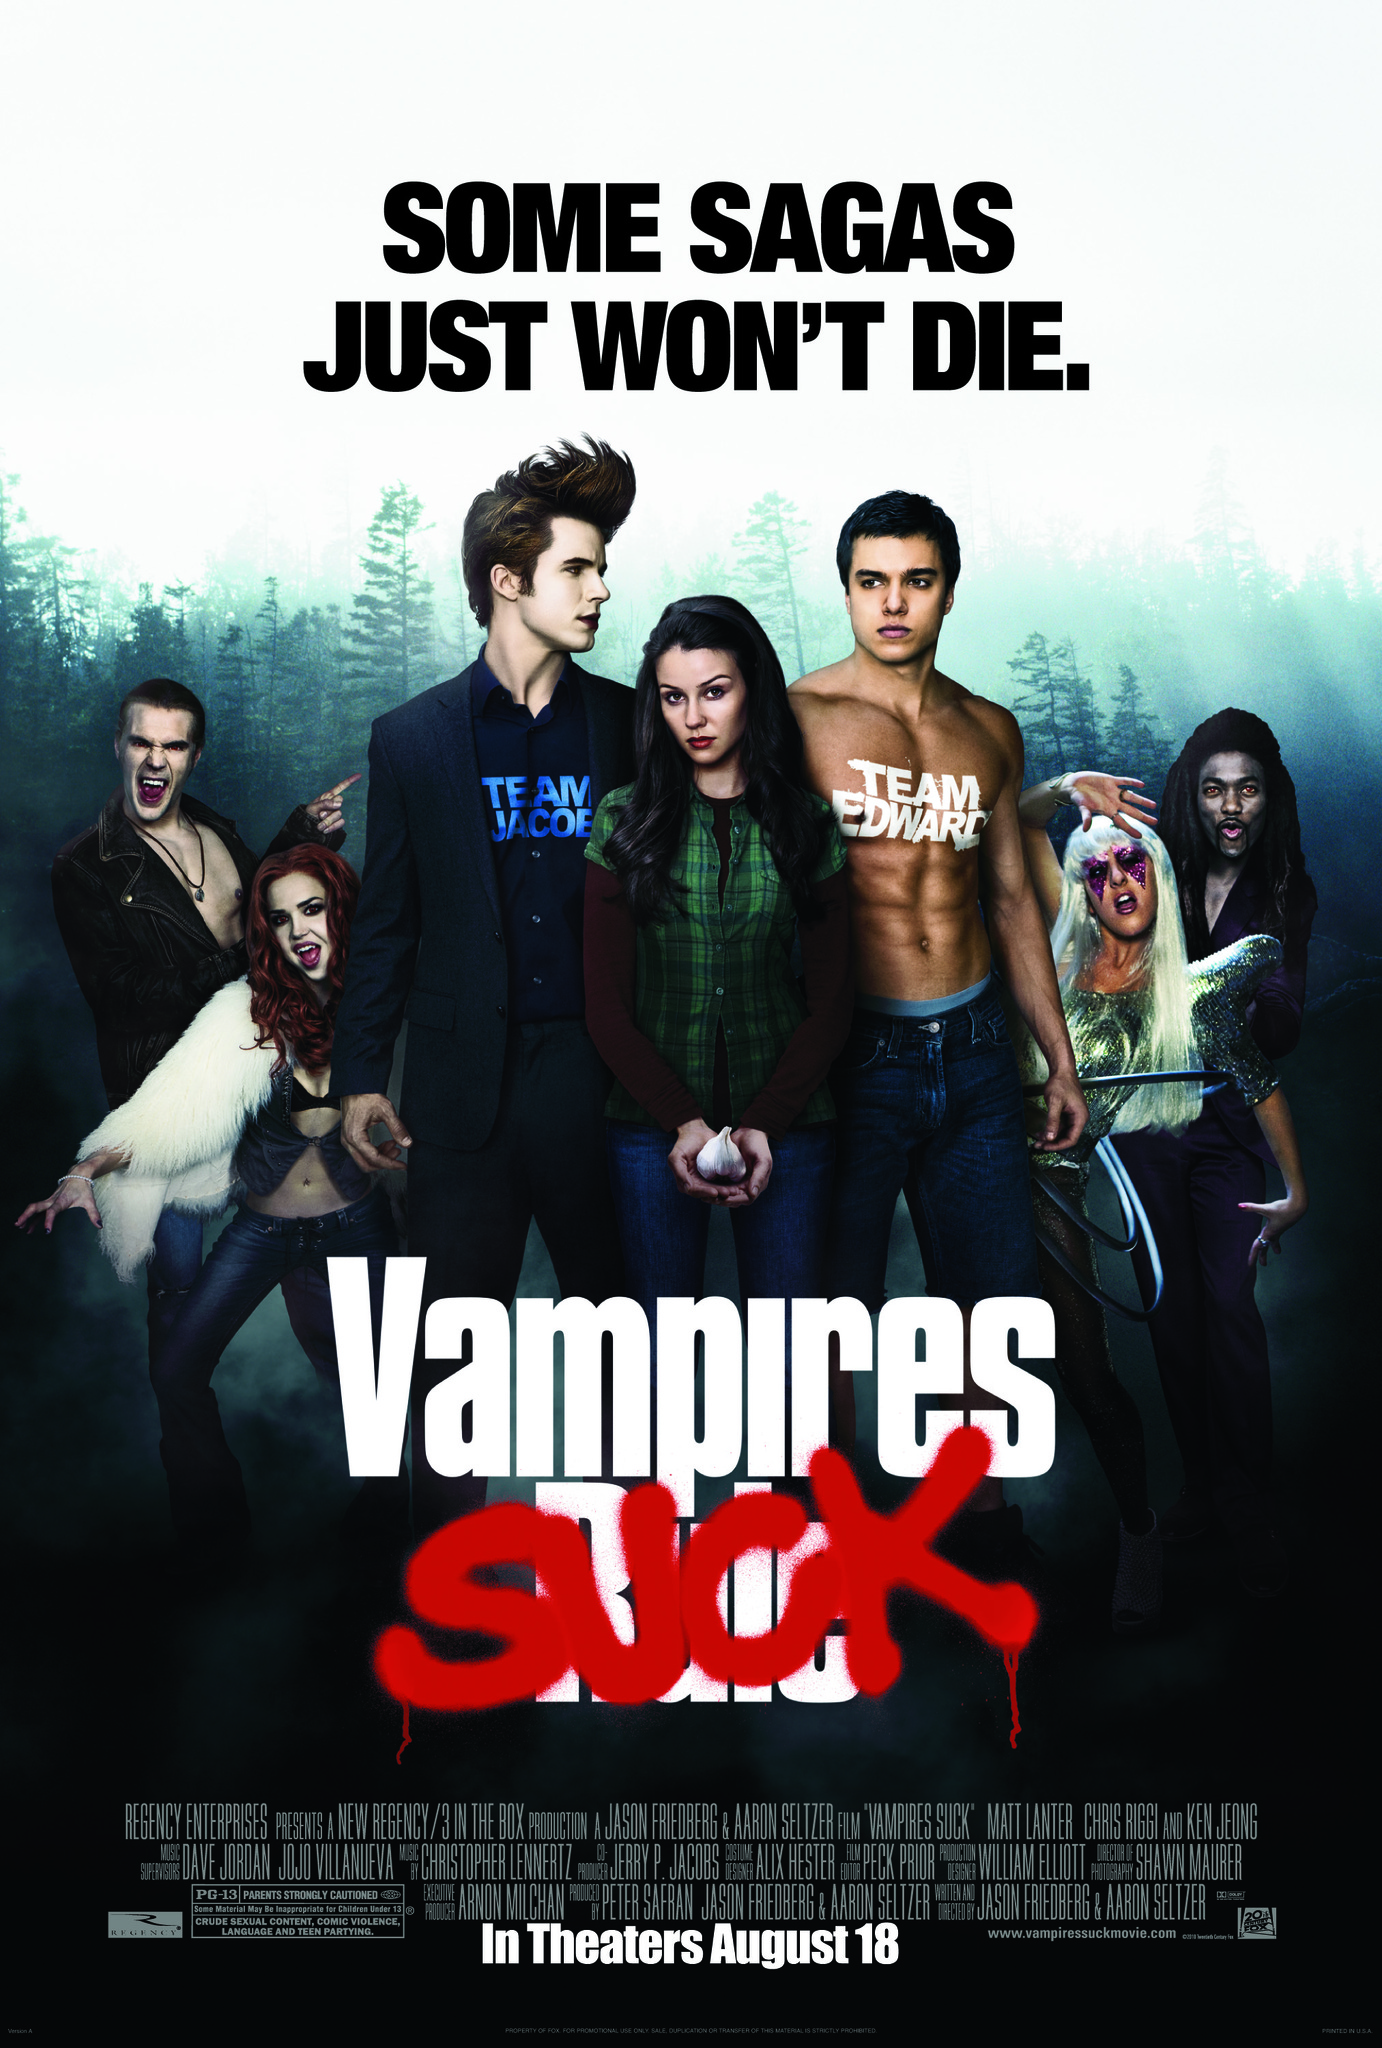 Vampires Suck (2010) ยำแวมไพร์สุดมันส์ Jenn Proske